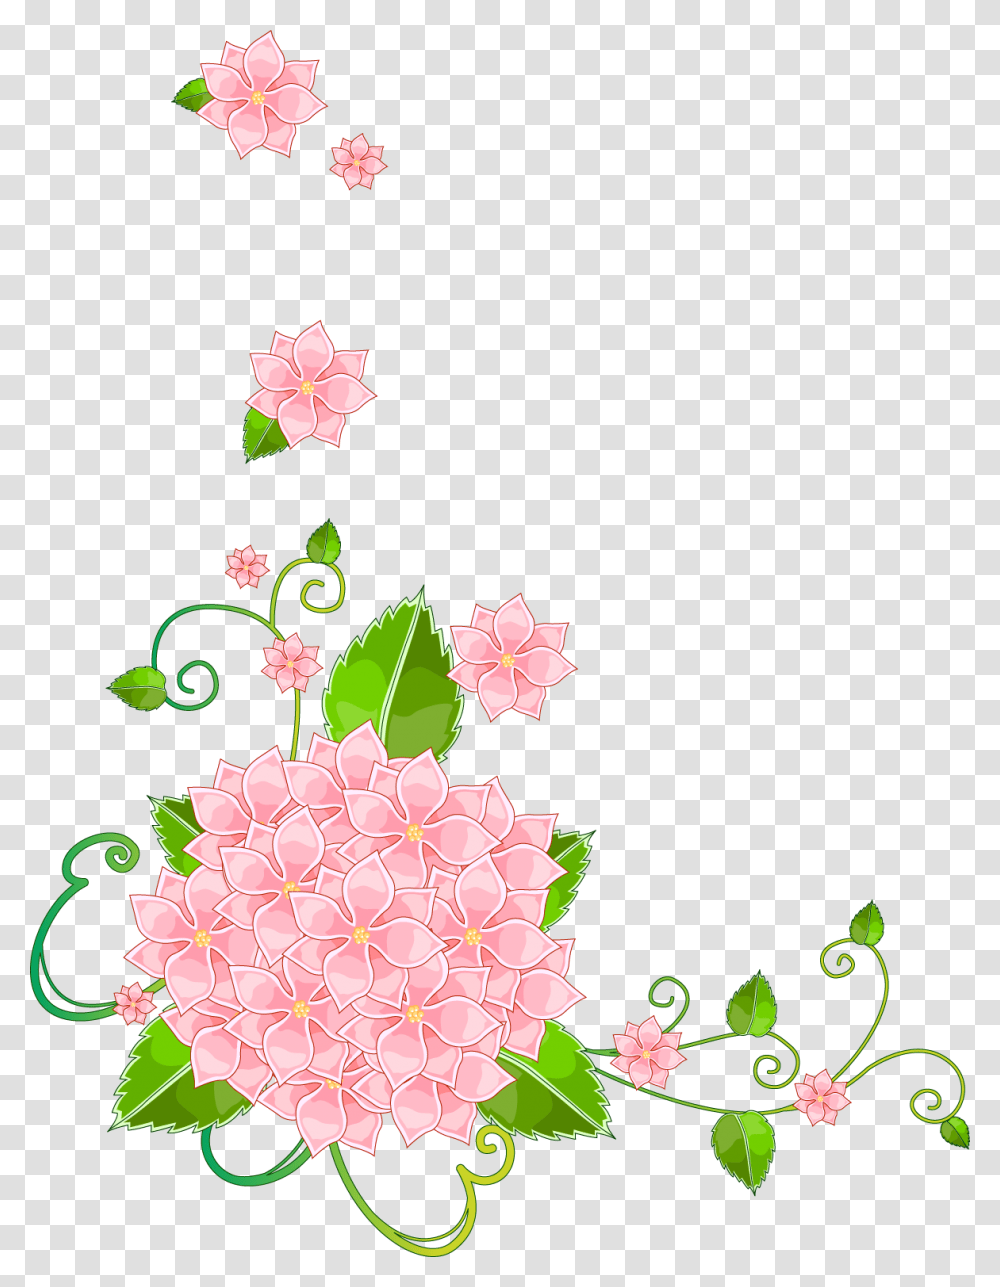 Corner Flowers For Cards, Floral Design, Pattern Transparent Png